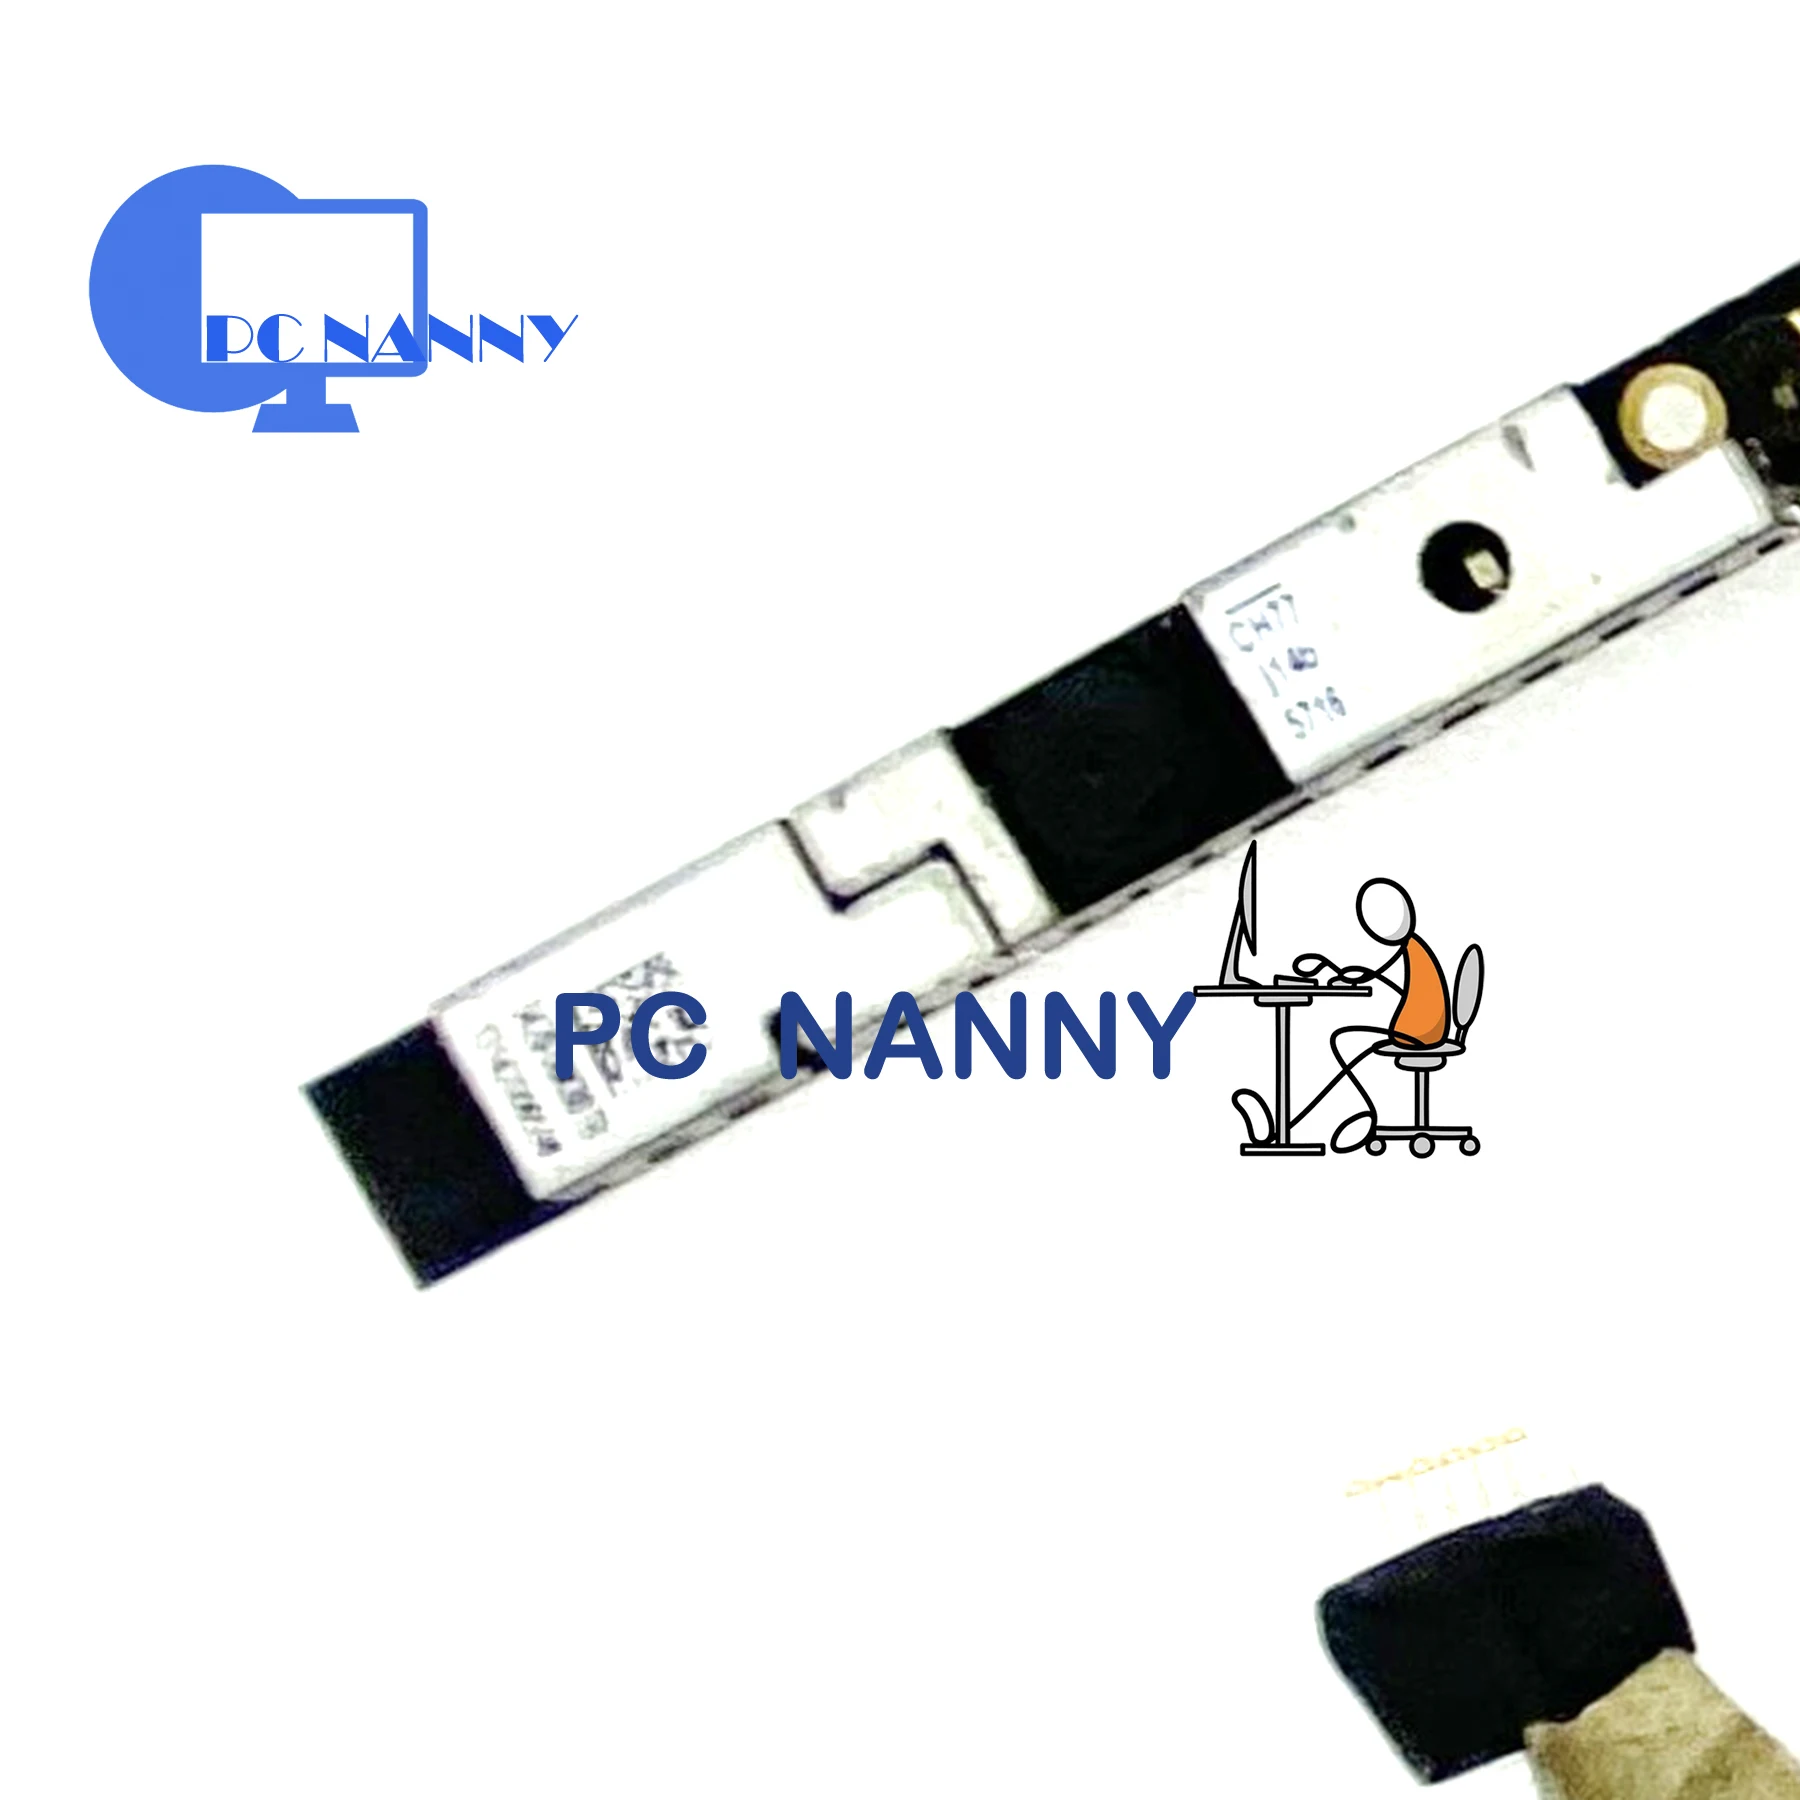 

PCNANNY FOR Toshiba P50-A P50T-A P55-A P55T-A Webcam Camera Module Board